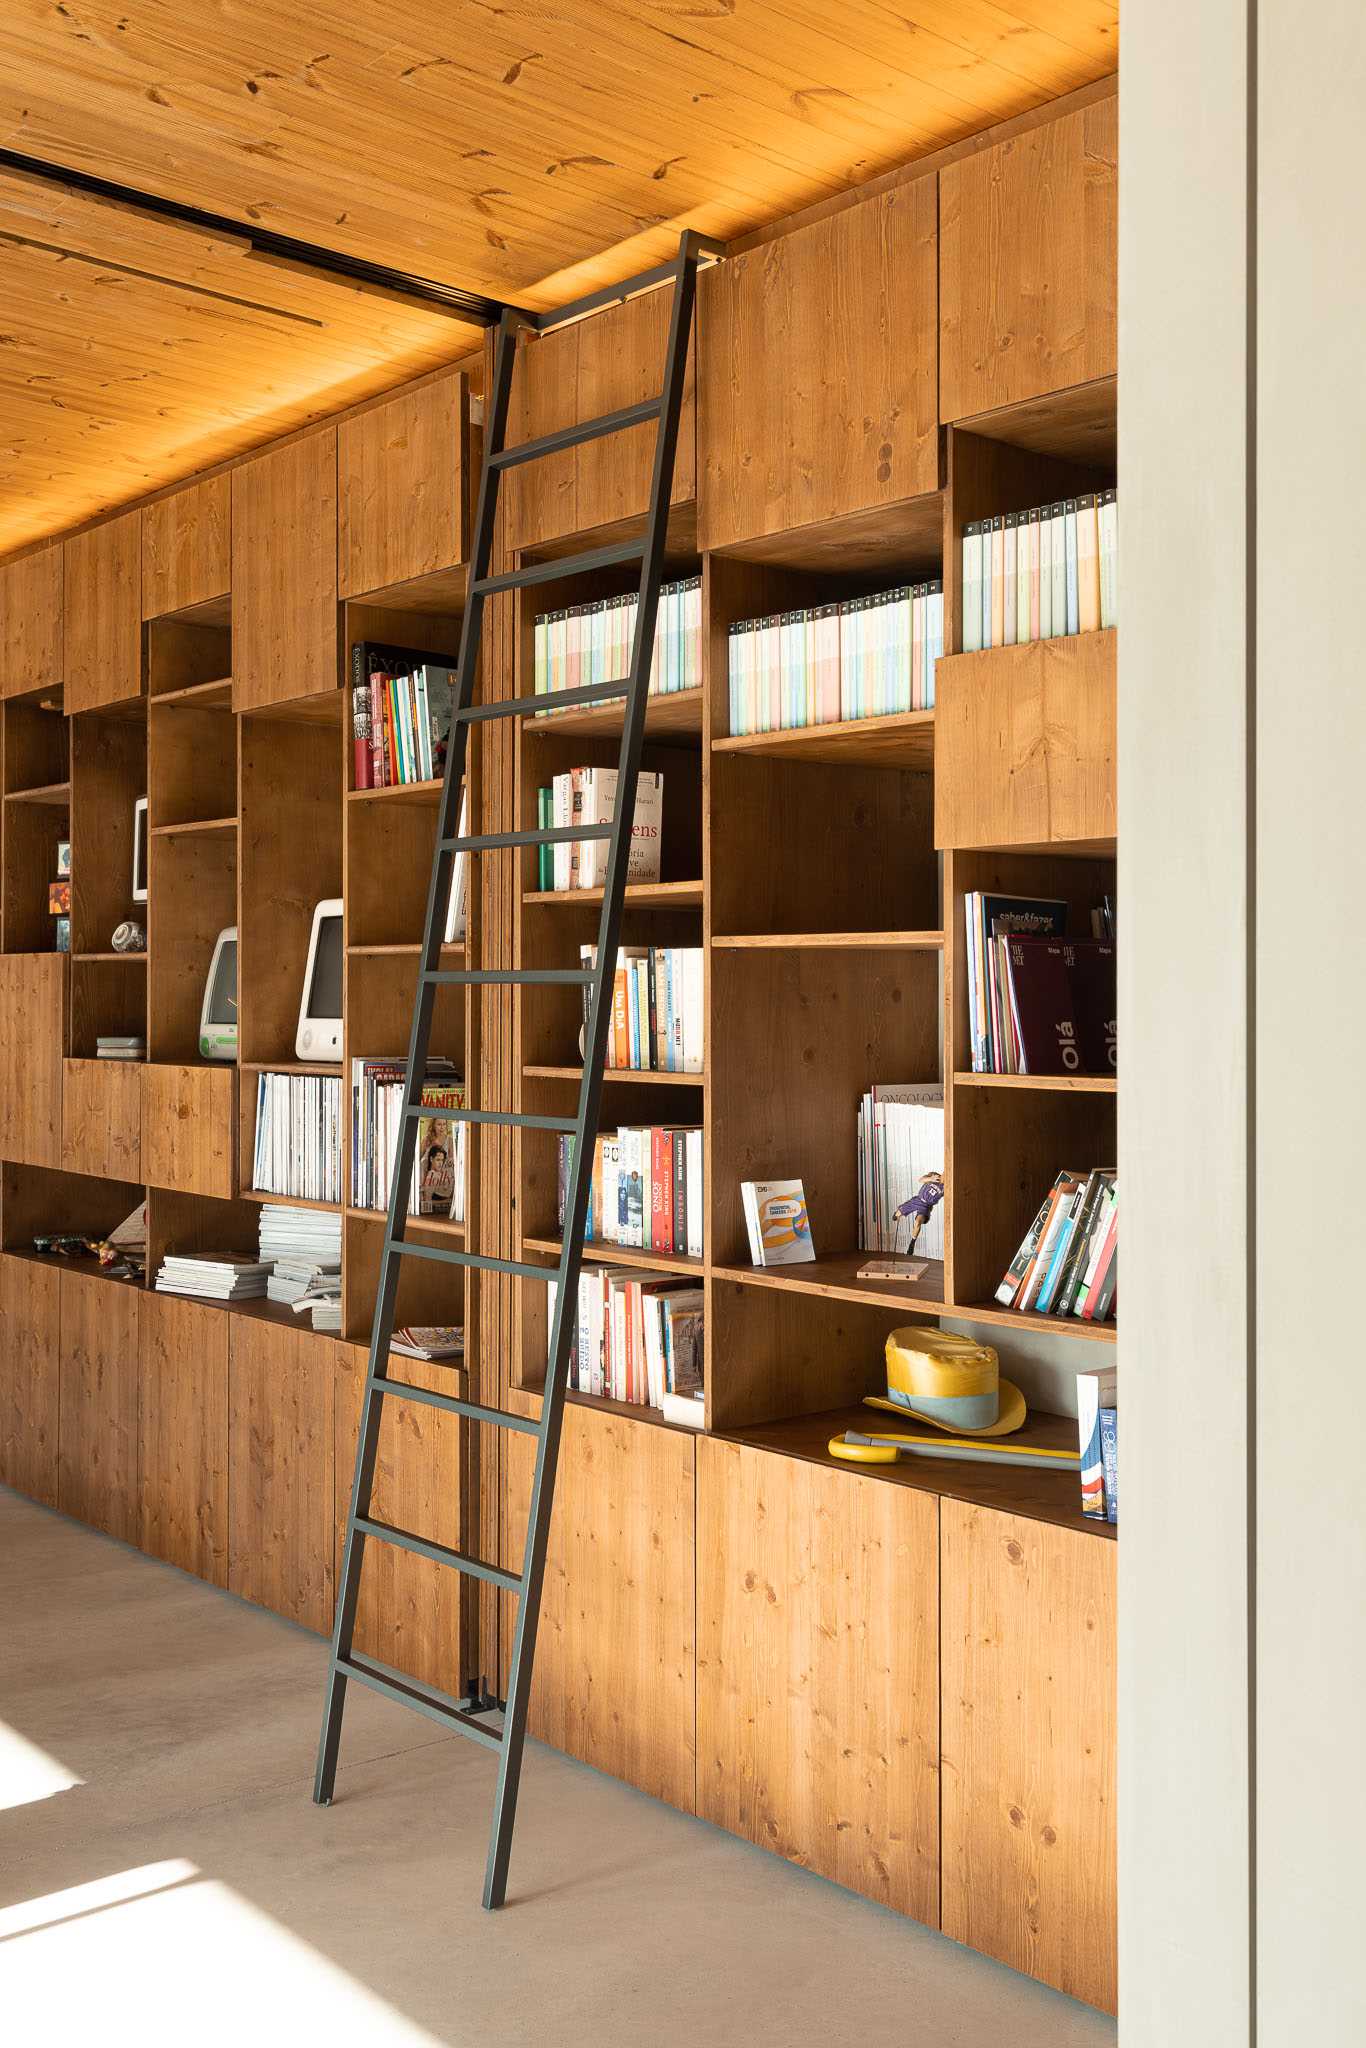 A modern wood bookshelf with a ladder.